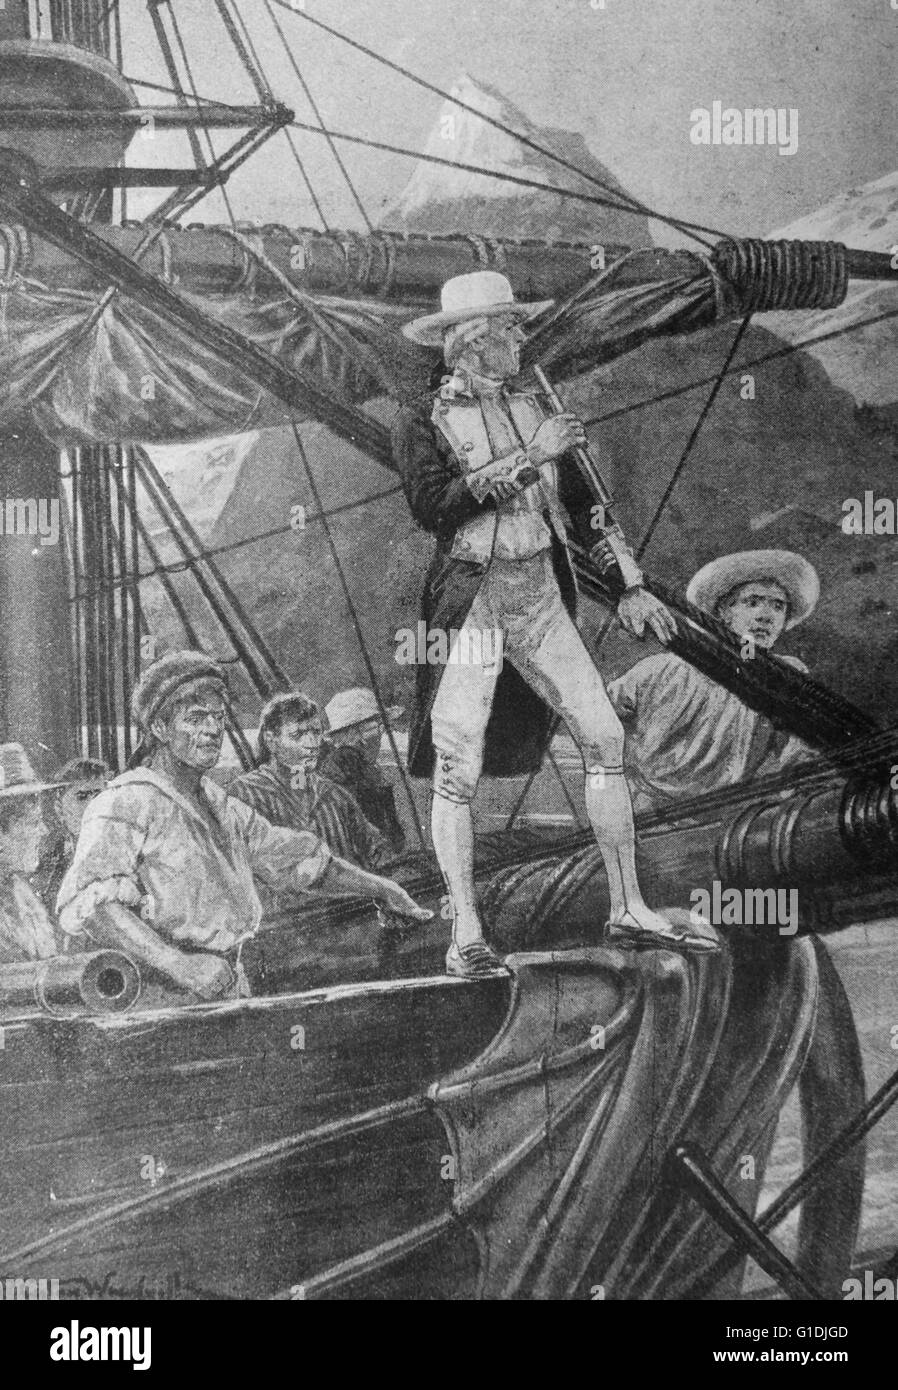 Les découvertes du capitaine Cook dans les mers du Sud. Le capitaine James Cook, trois voyages l'ont emmené à la Nouvelle Zélande, l'Australie, les îles du Pacifique et à Hawaii. Banque D'Images